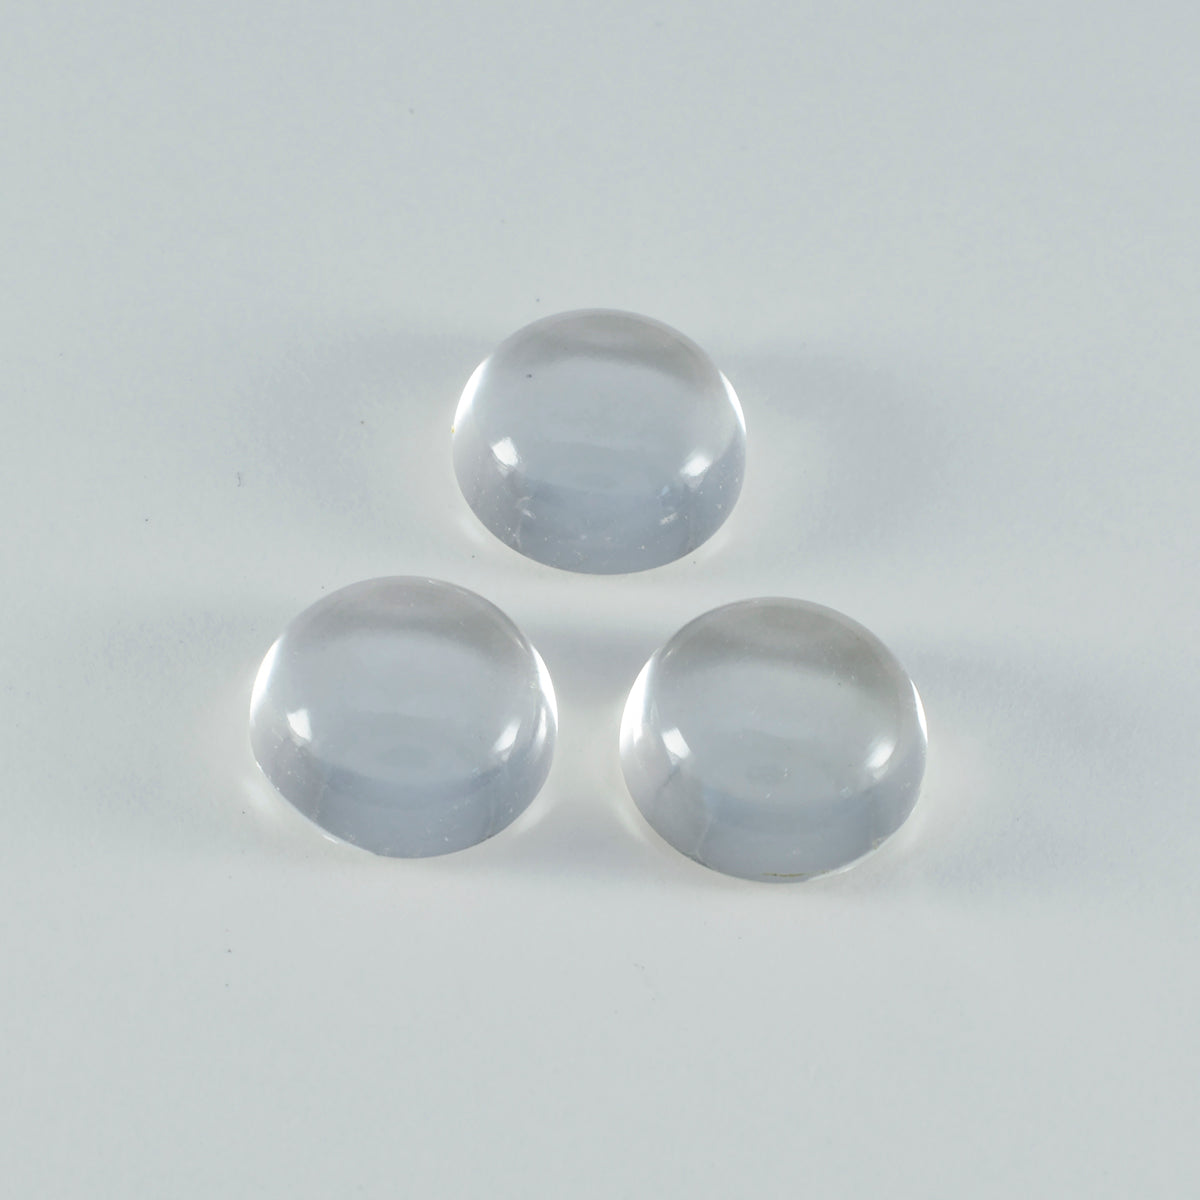 riyogems 1 шт., белый кристалл кварца, кабошон 11x11 мм, круглая форма, красивое качество, свободный драгоценный камень